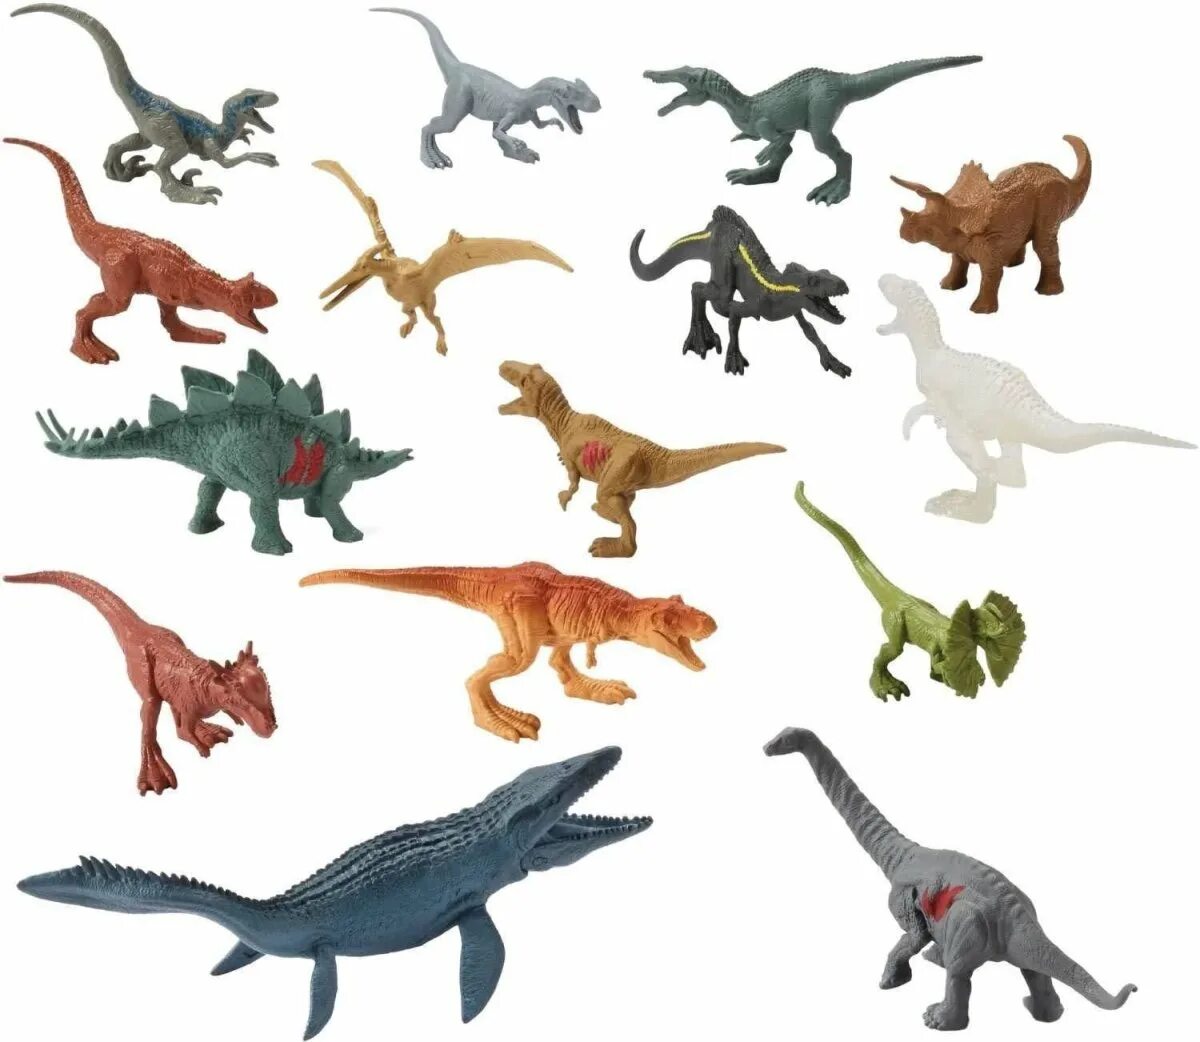 Mattel Jurassic World мини динозавров. Игрушки динозавры мир Юрского периода 2. Коллекция динозавров джурасик парк. Мир Юрского периода игрушки травоядные.